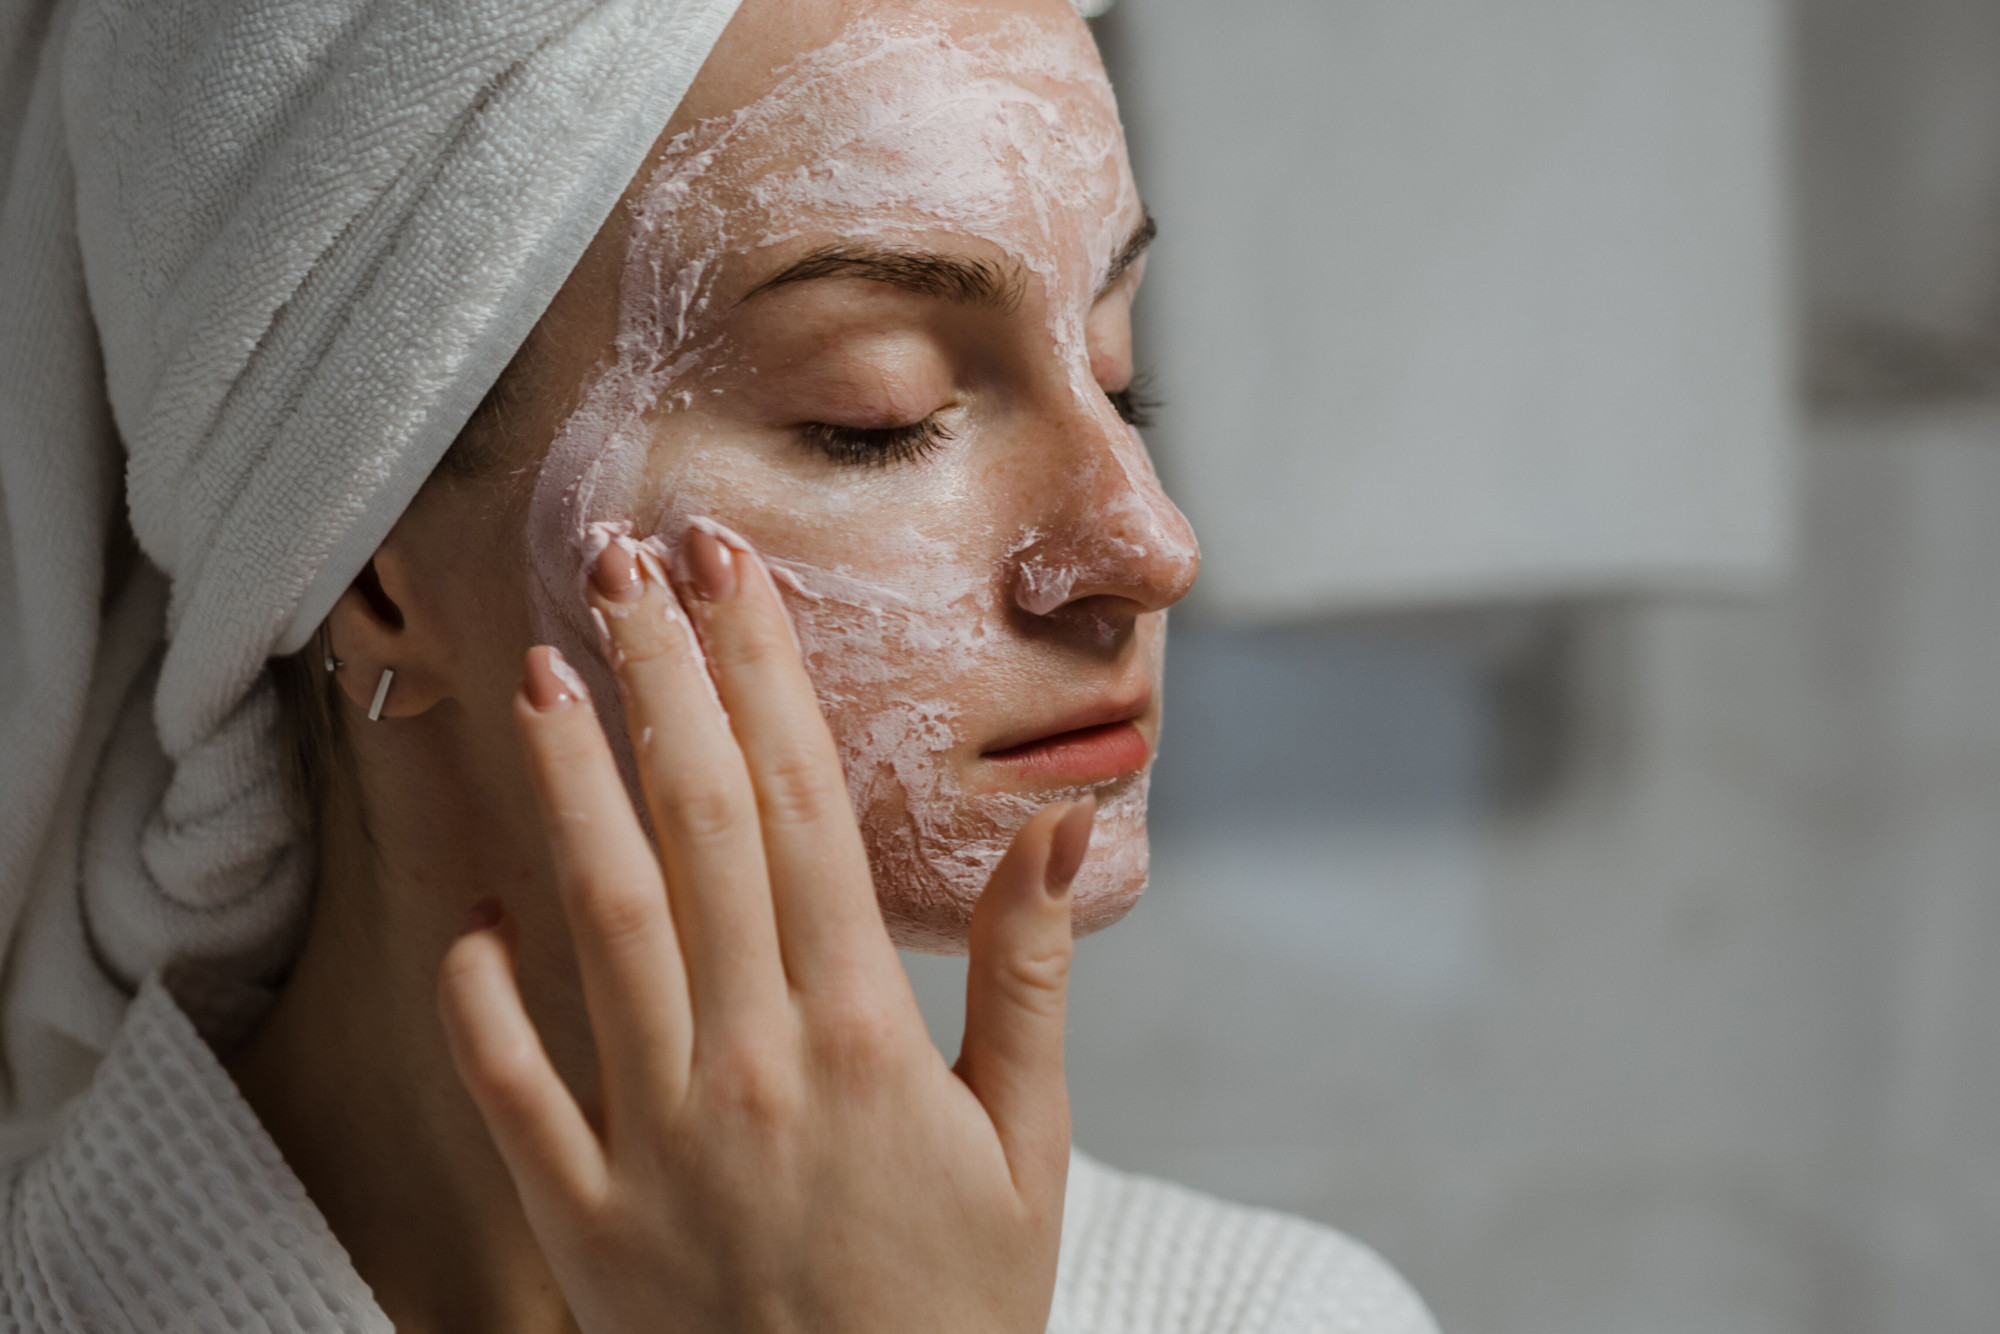 Chú trọng làm sạch: Yếu tố quan trọng nhất của quy trình chăm sóc da của phụ nữ Pháp là làm sạch. Bạn có da dầu, da khô hay da hỗn hợp thì phải cân nhắc lựa chọn loại sữa rửa mặt phù hợp với yêu cầu cụ thể của làn da. Bằng cách này có thể hạn chế sự xuất hiện của mụn và bọng mắt, nhờ đó lỗ chân lông có khả năng hấp thụ tốt hơn các dưỡng chất từ các sản phẩm dưỡng da khác.